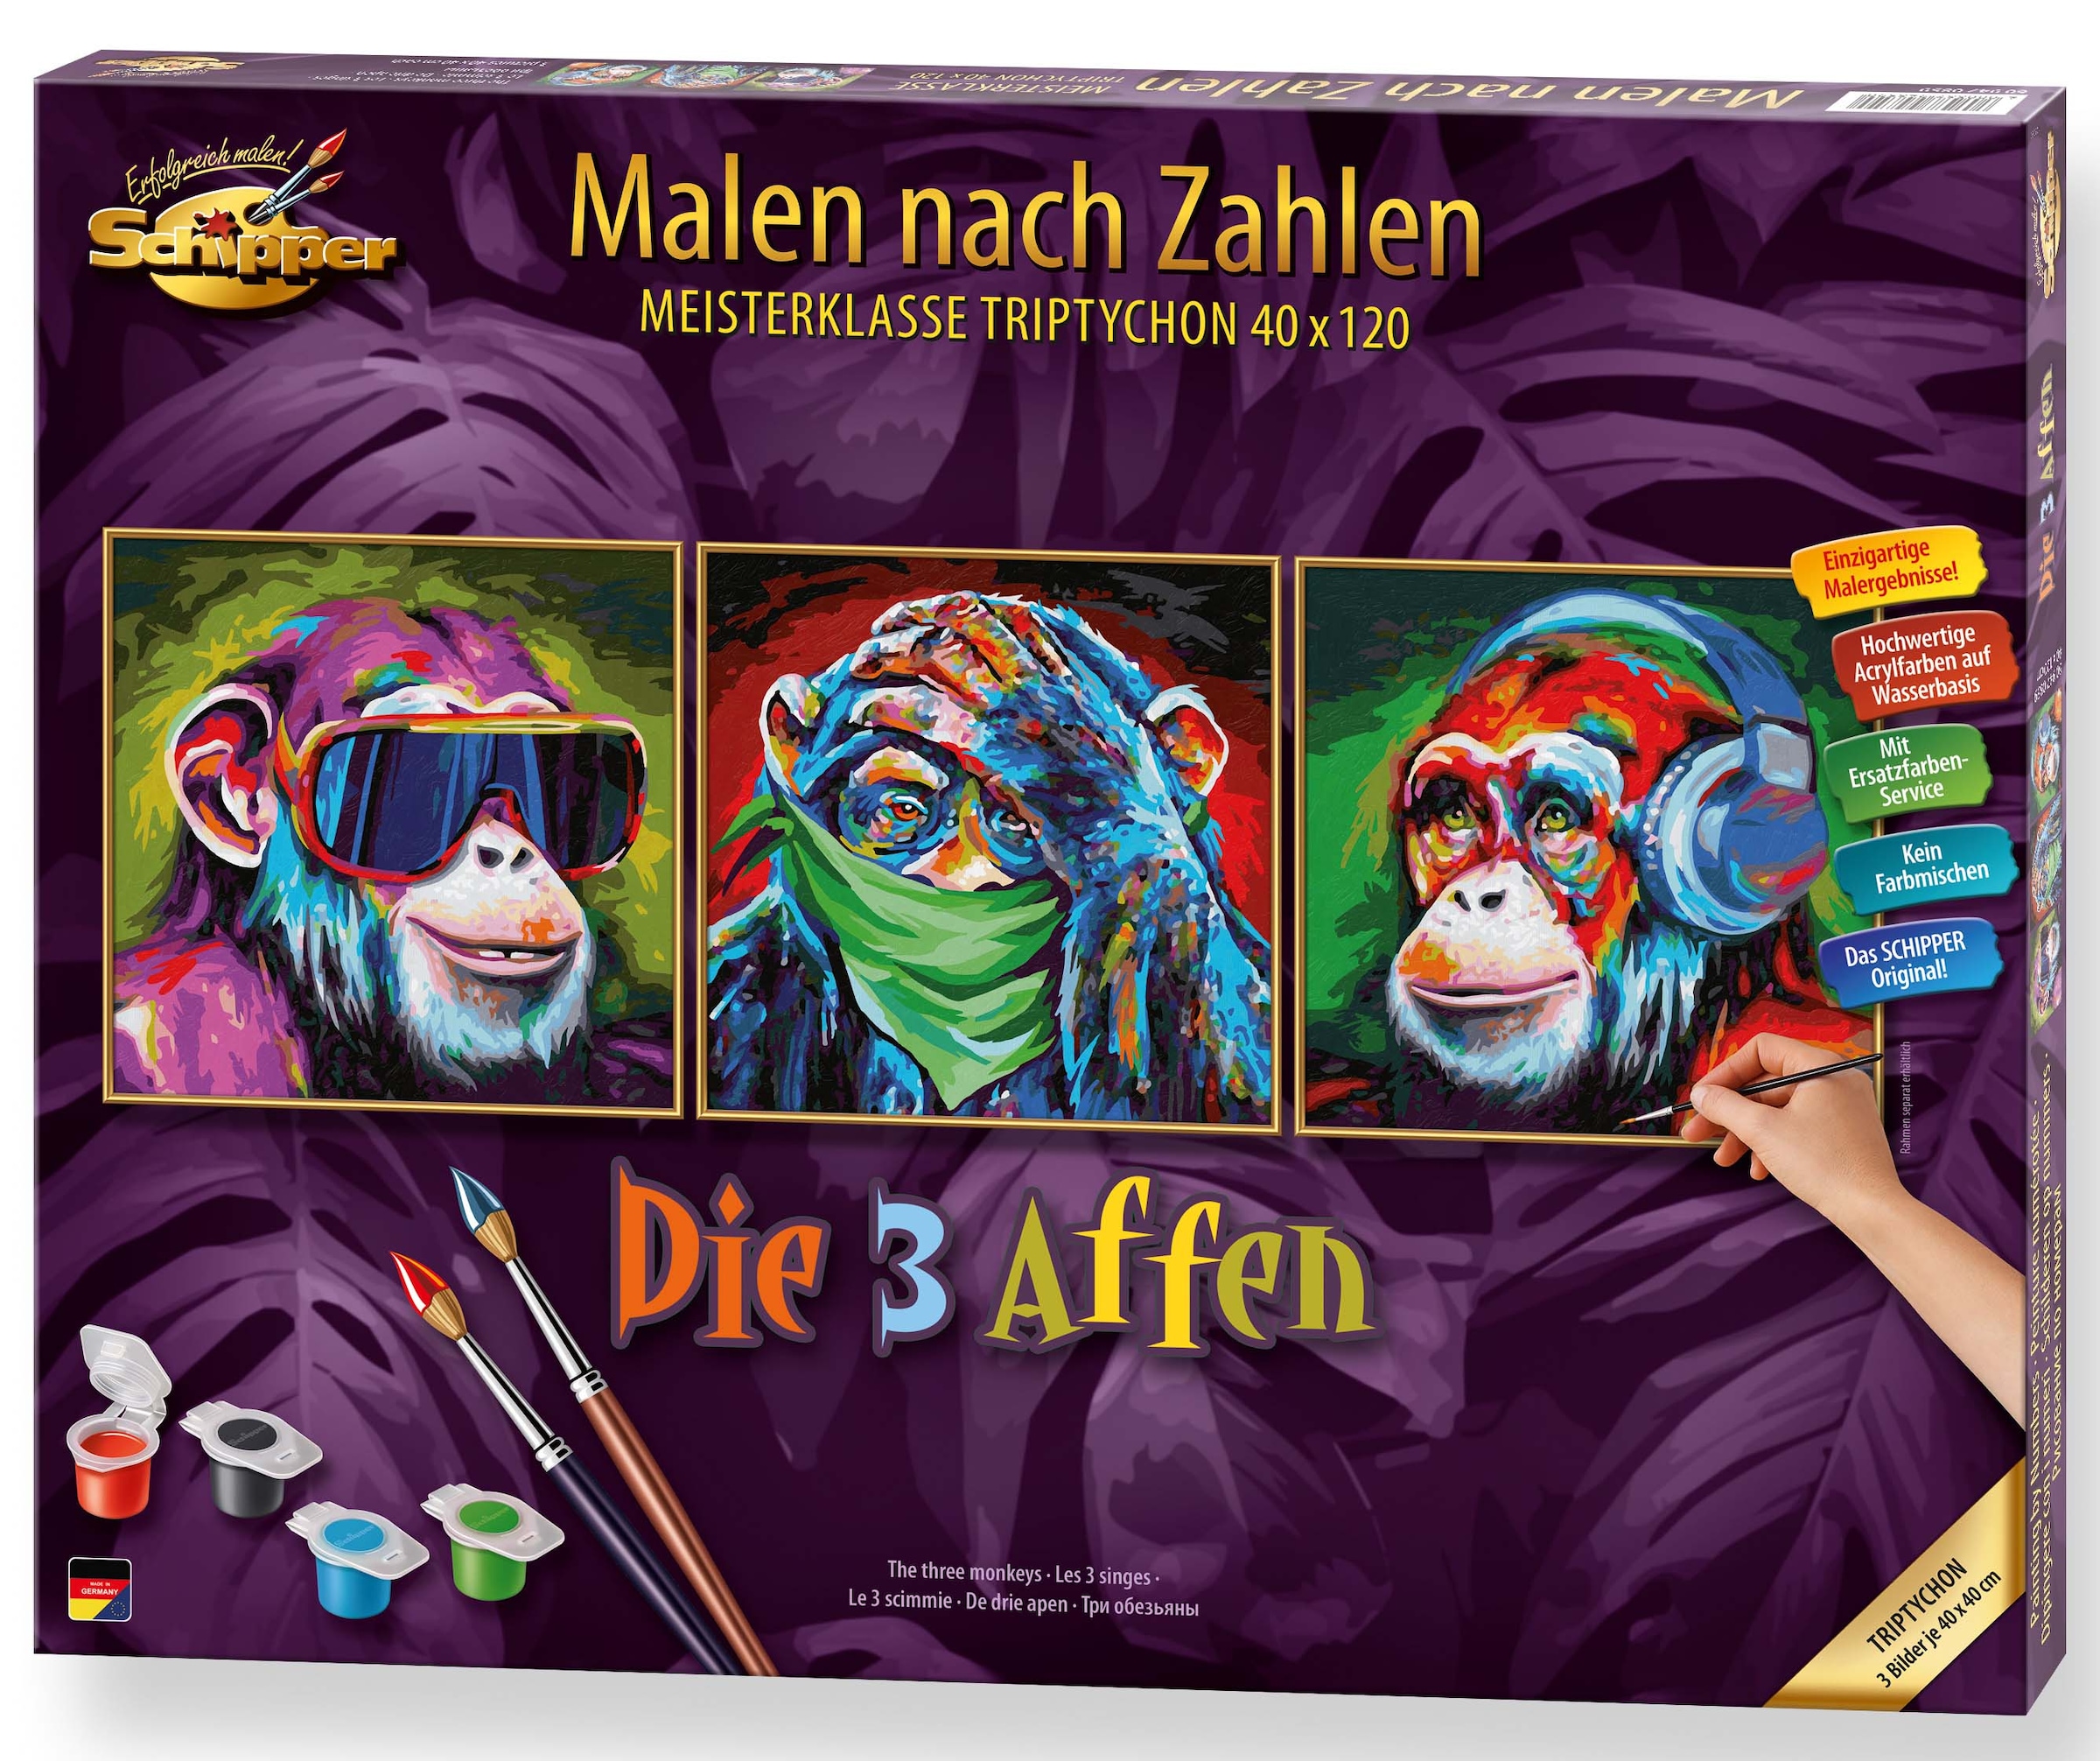 Germany Made Zahlen - Malen Die bestellen 3 Schipper nach online Affen«, in »Meisterklasse Triptychon